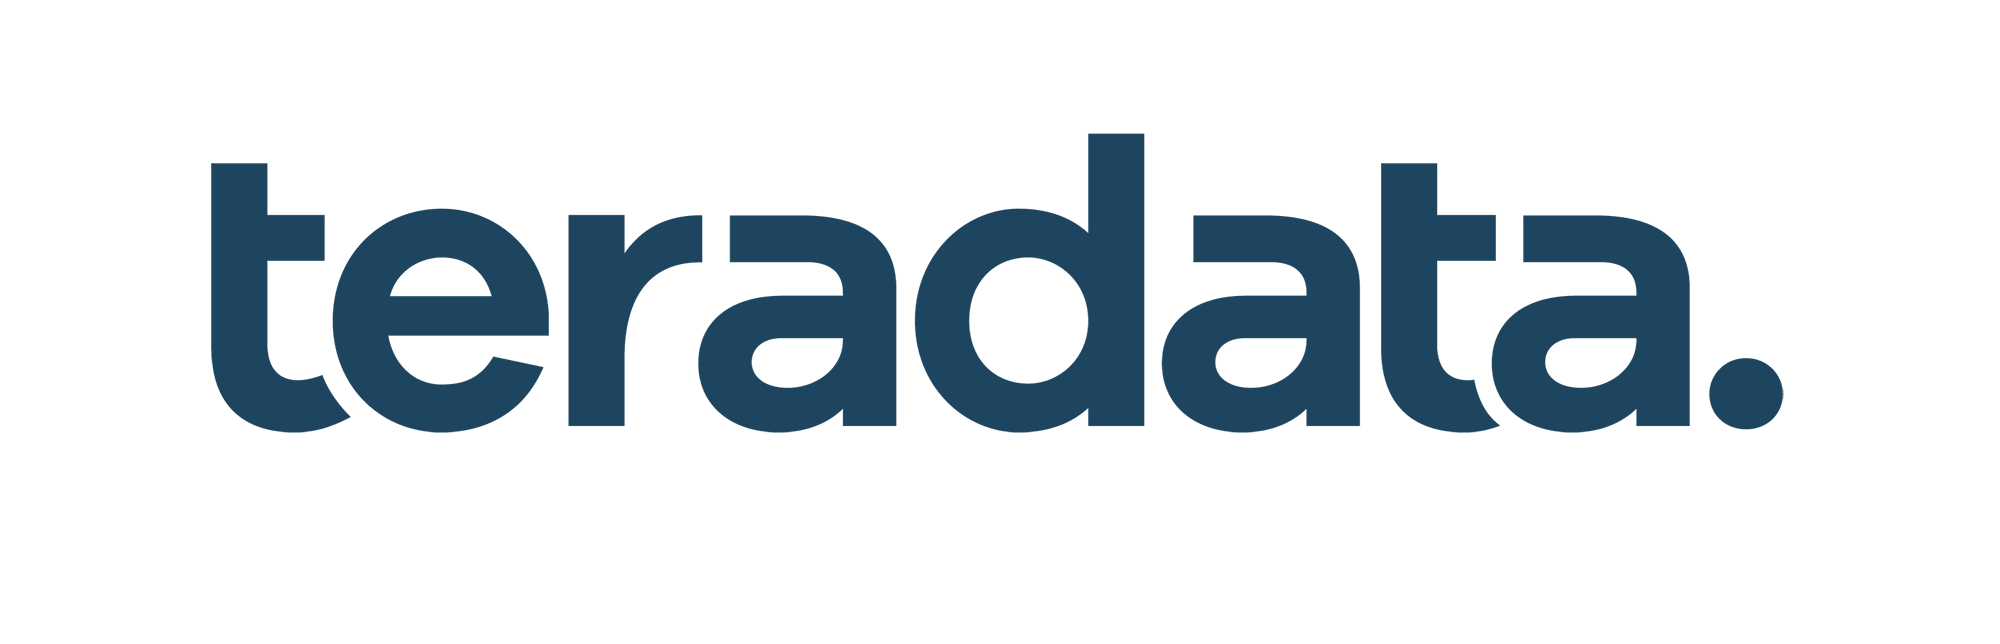 Teradata Logo - Lean Focus Client